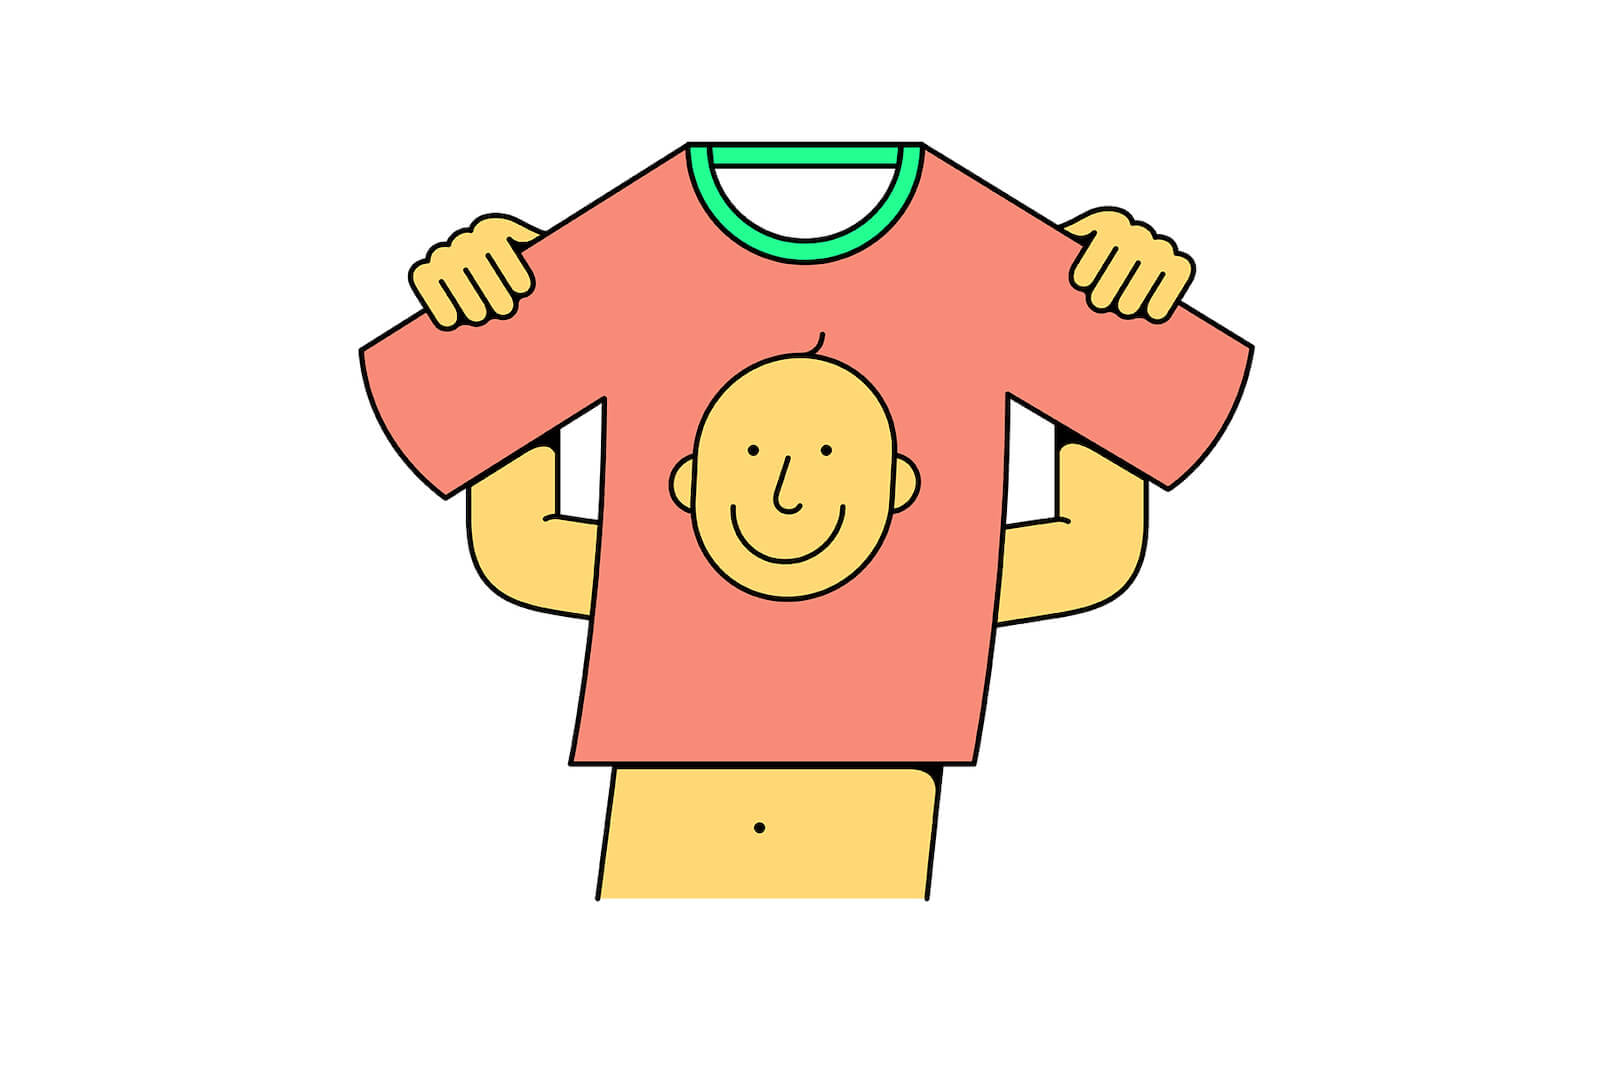 Eine Symbolgrafik, die ein T-Shirt mit einem Smiley zeigt. Mit Print-on-Demand kannst du leicht Geld in Heimarbeit verdienen.